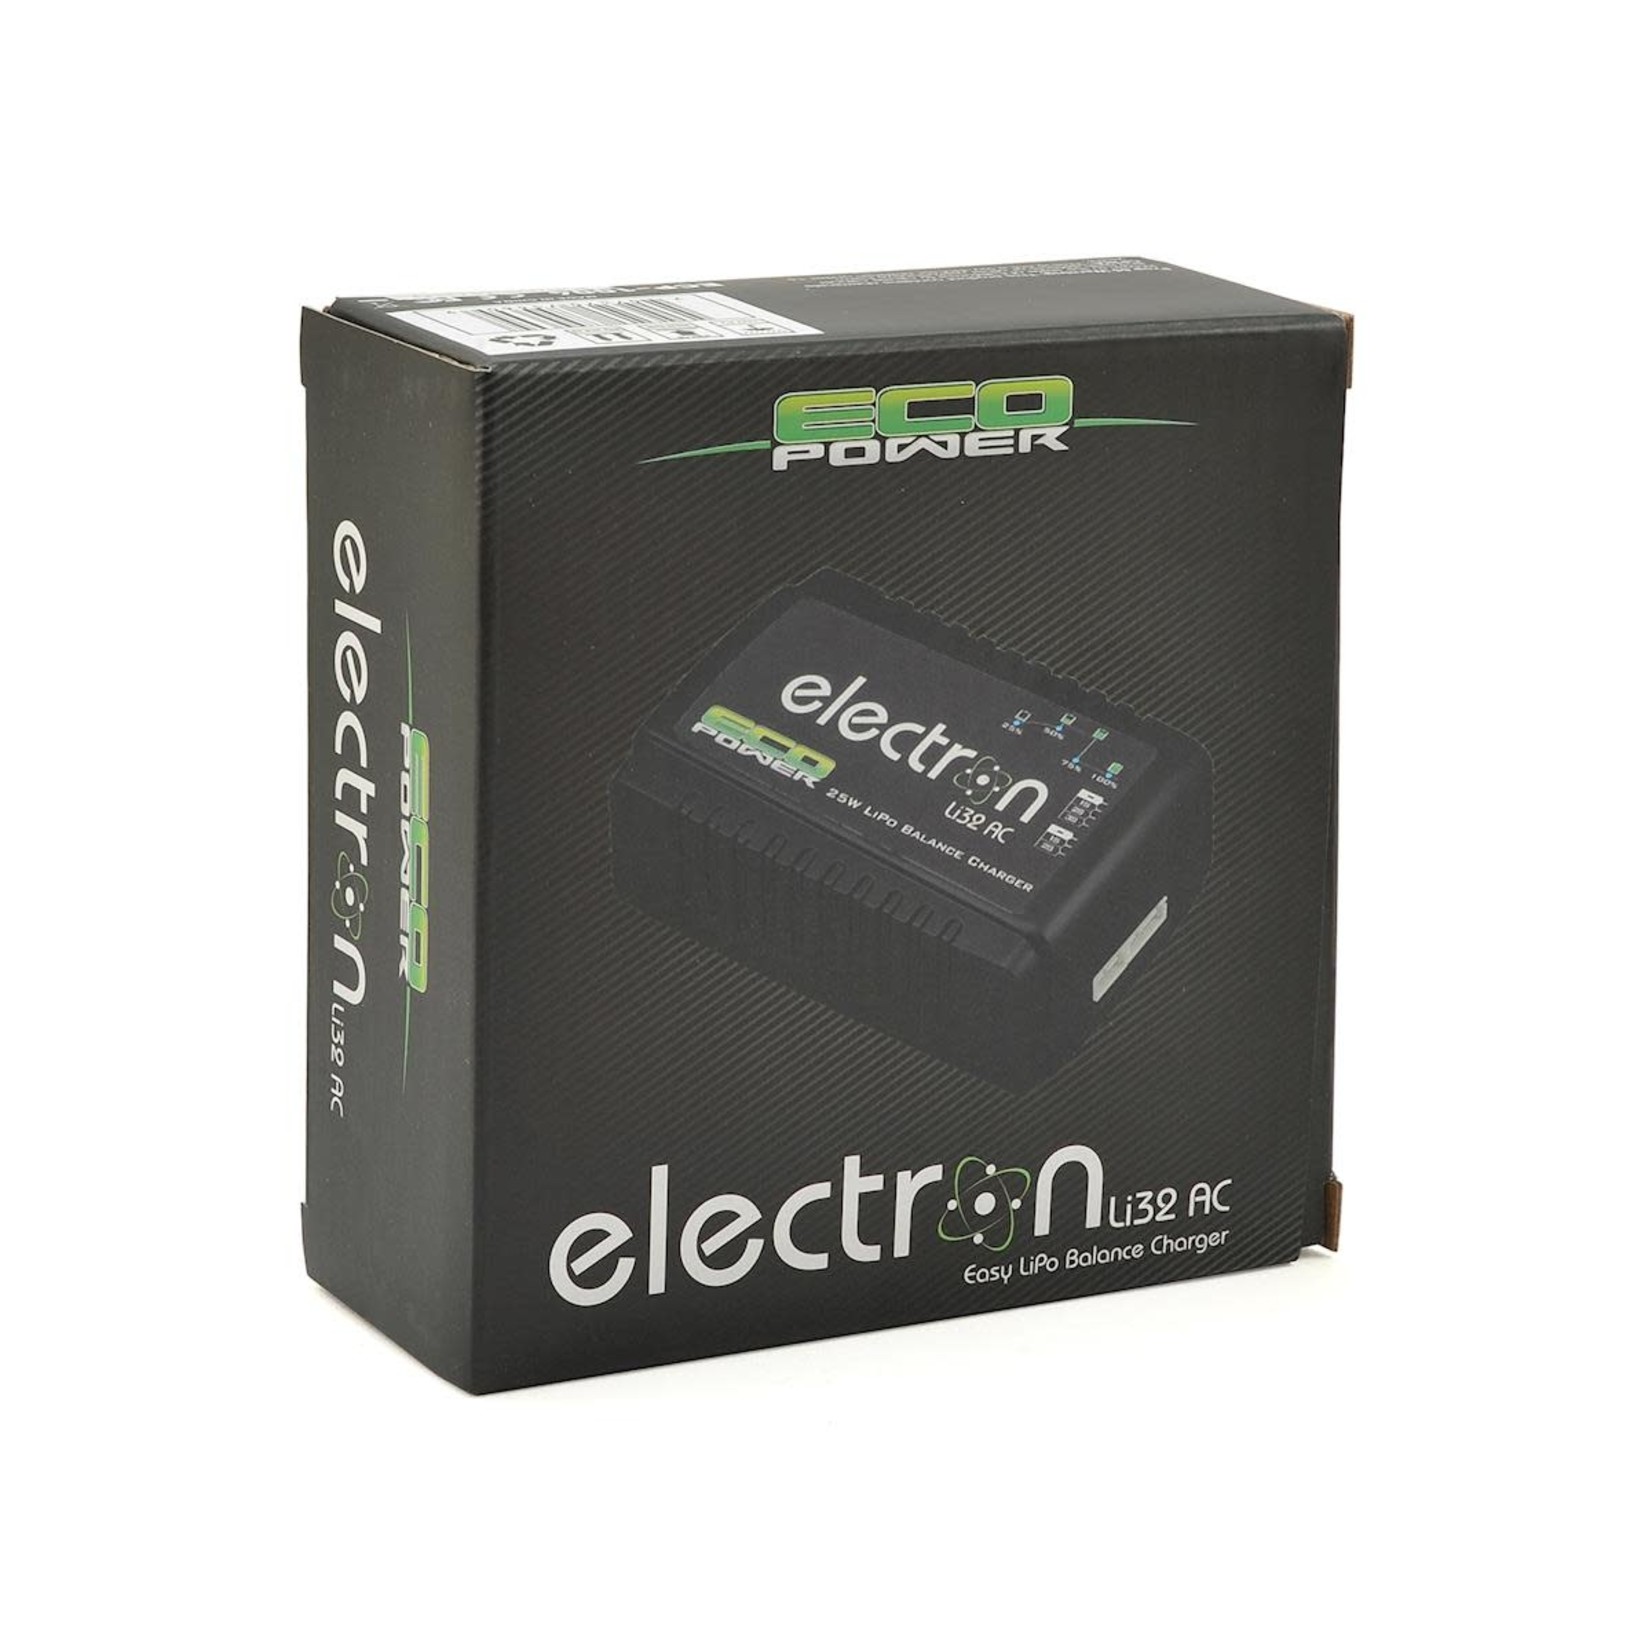 EcoPower EcoPower "Electron Li32 AC" LiPo Balance Battery Charger (2-3S/2A/25W) #ECP-1004